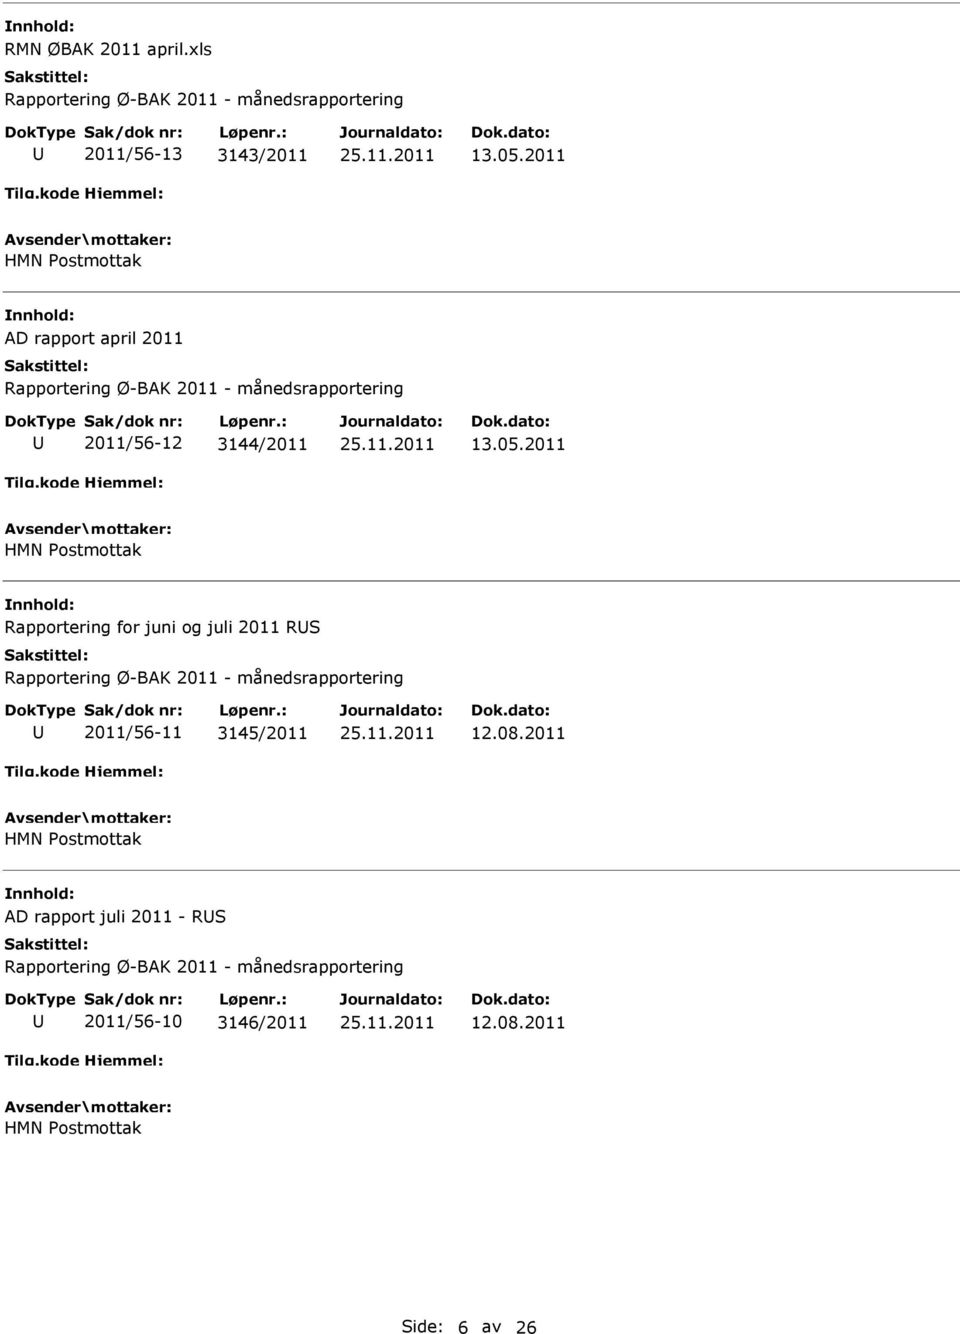 2011 HMN ostmottak Rapportering for juni og juli 2011 RS 2011/56-11